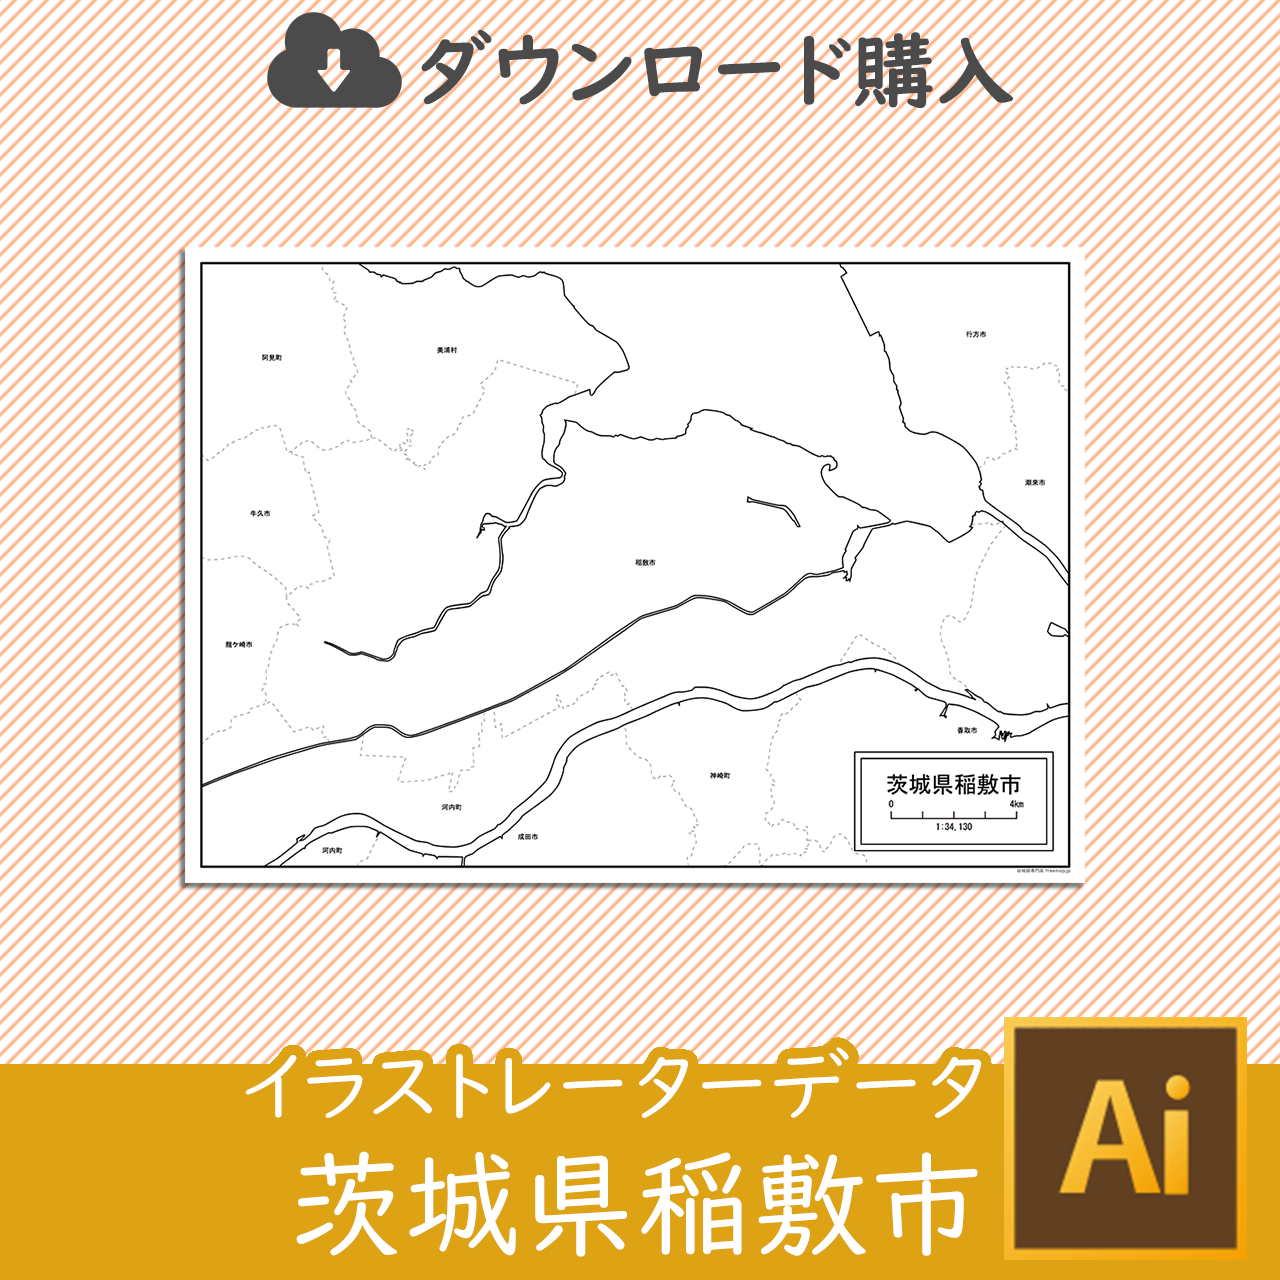 稲敷市のaiデータのサムネイル画像